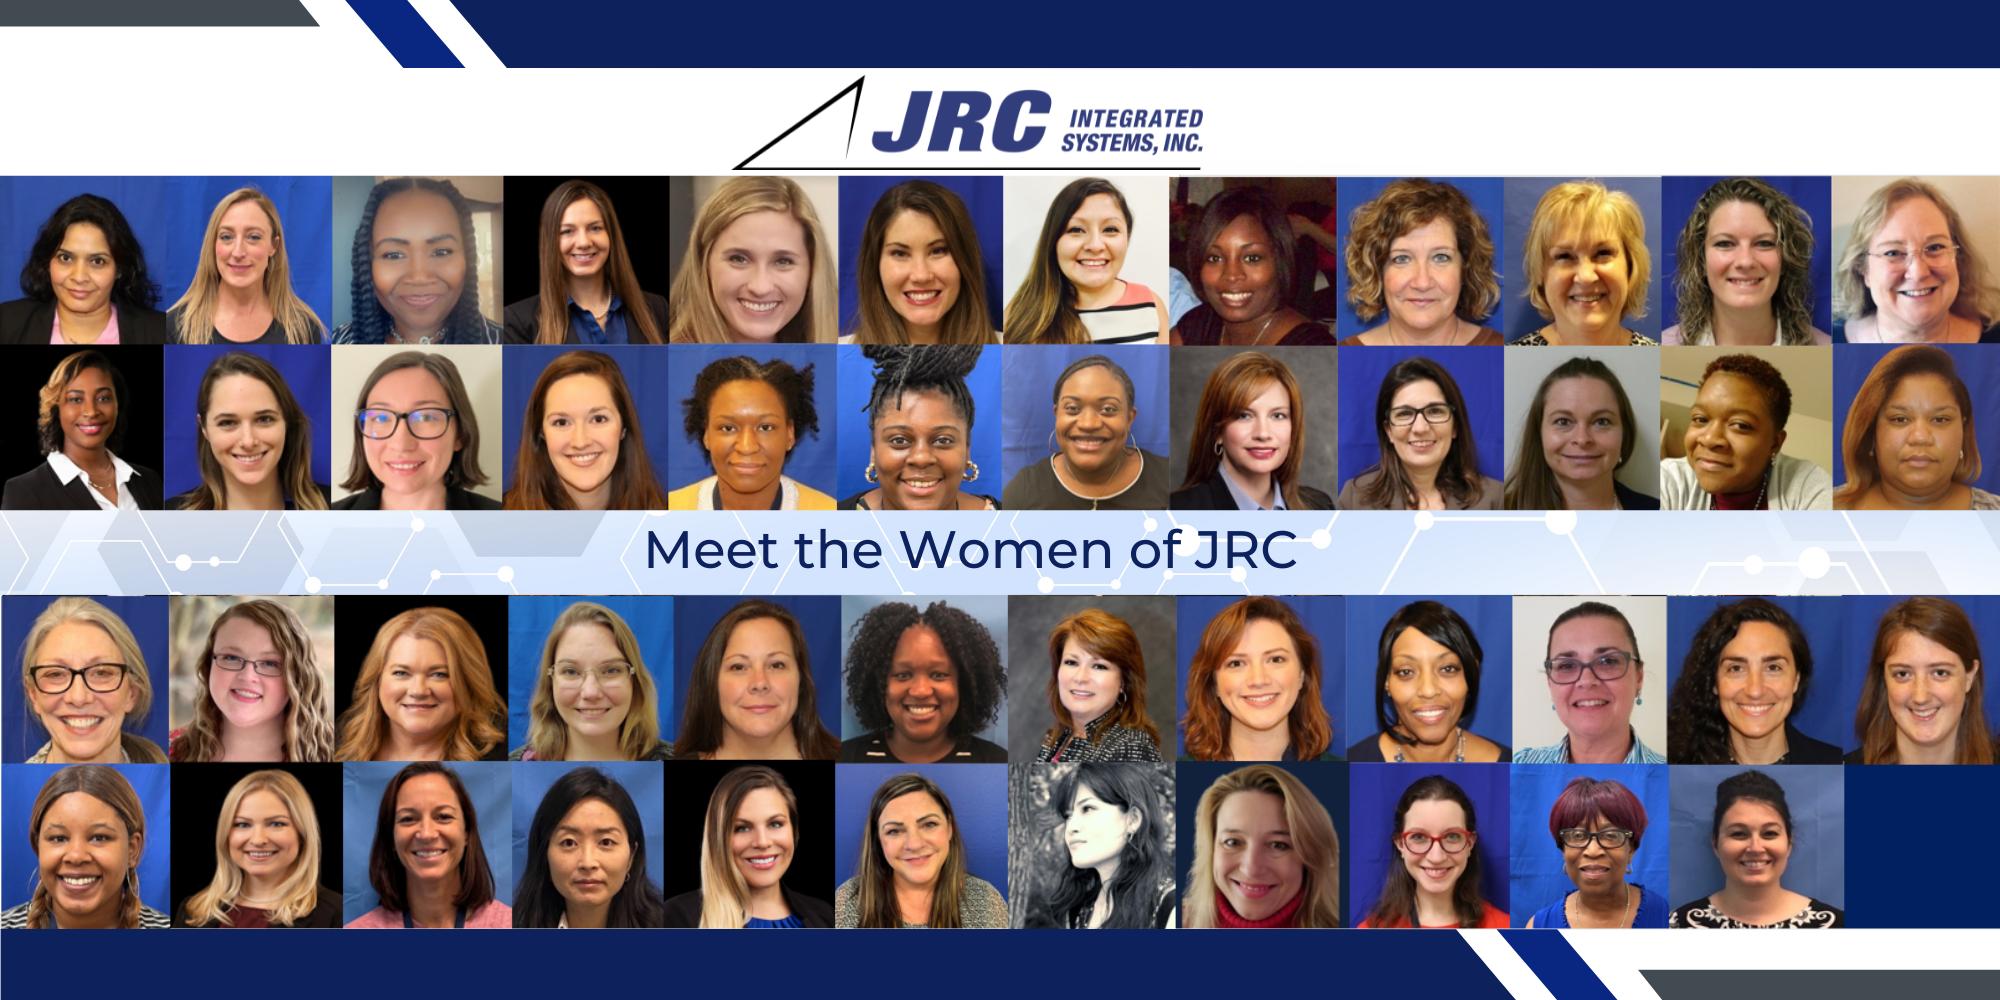 MEET THE WOMEN OF JRC